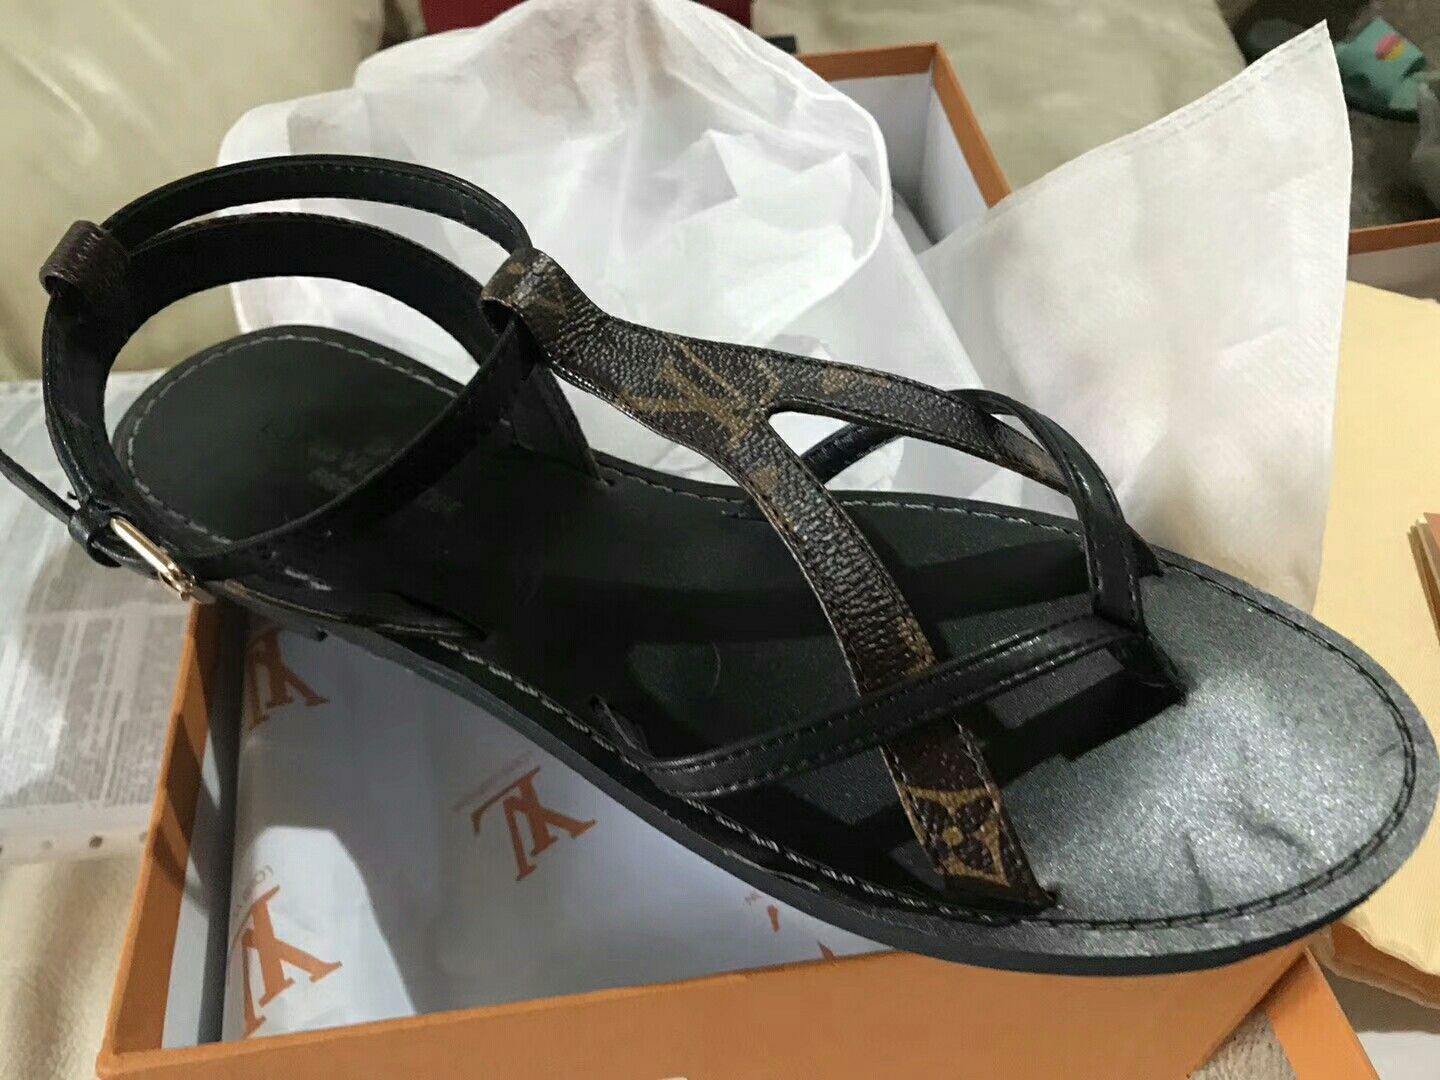 **Authentic** Louis Vuitton Denim Sandals Heels-39 for Sale in Arlington,  TX - OfferUp